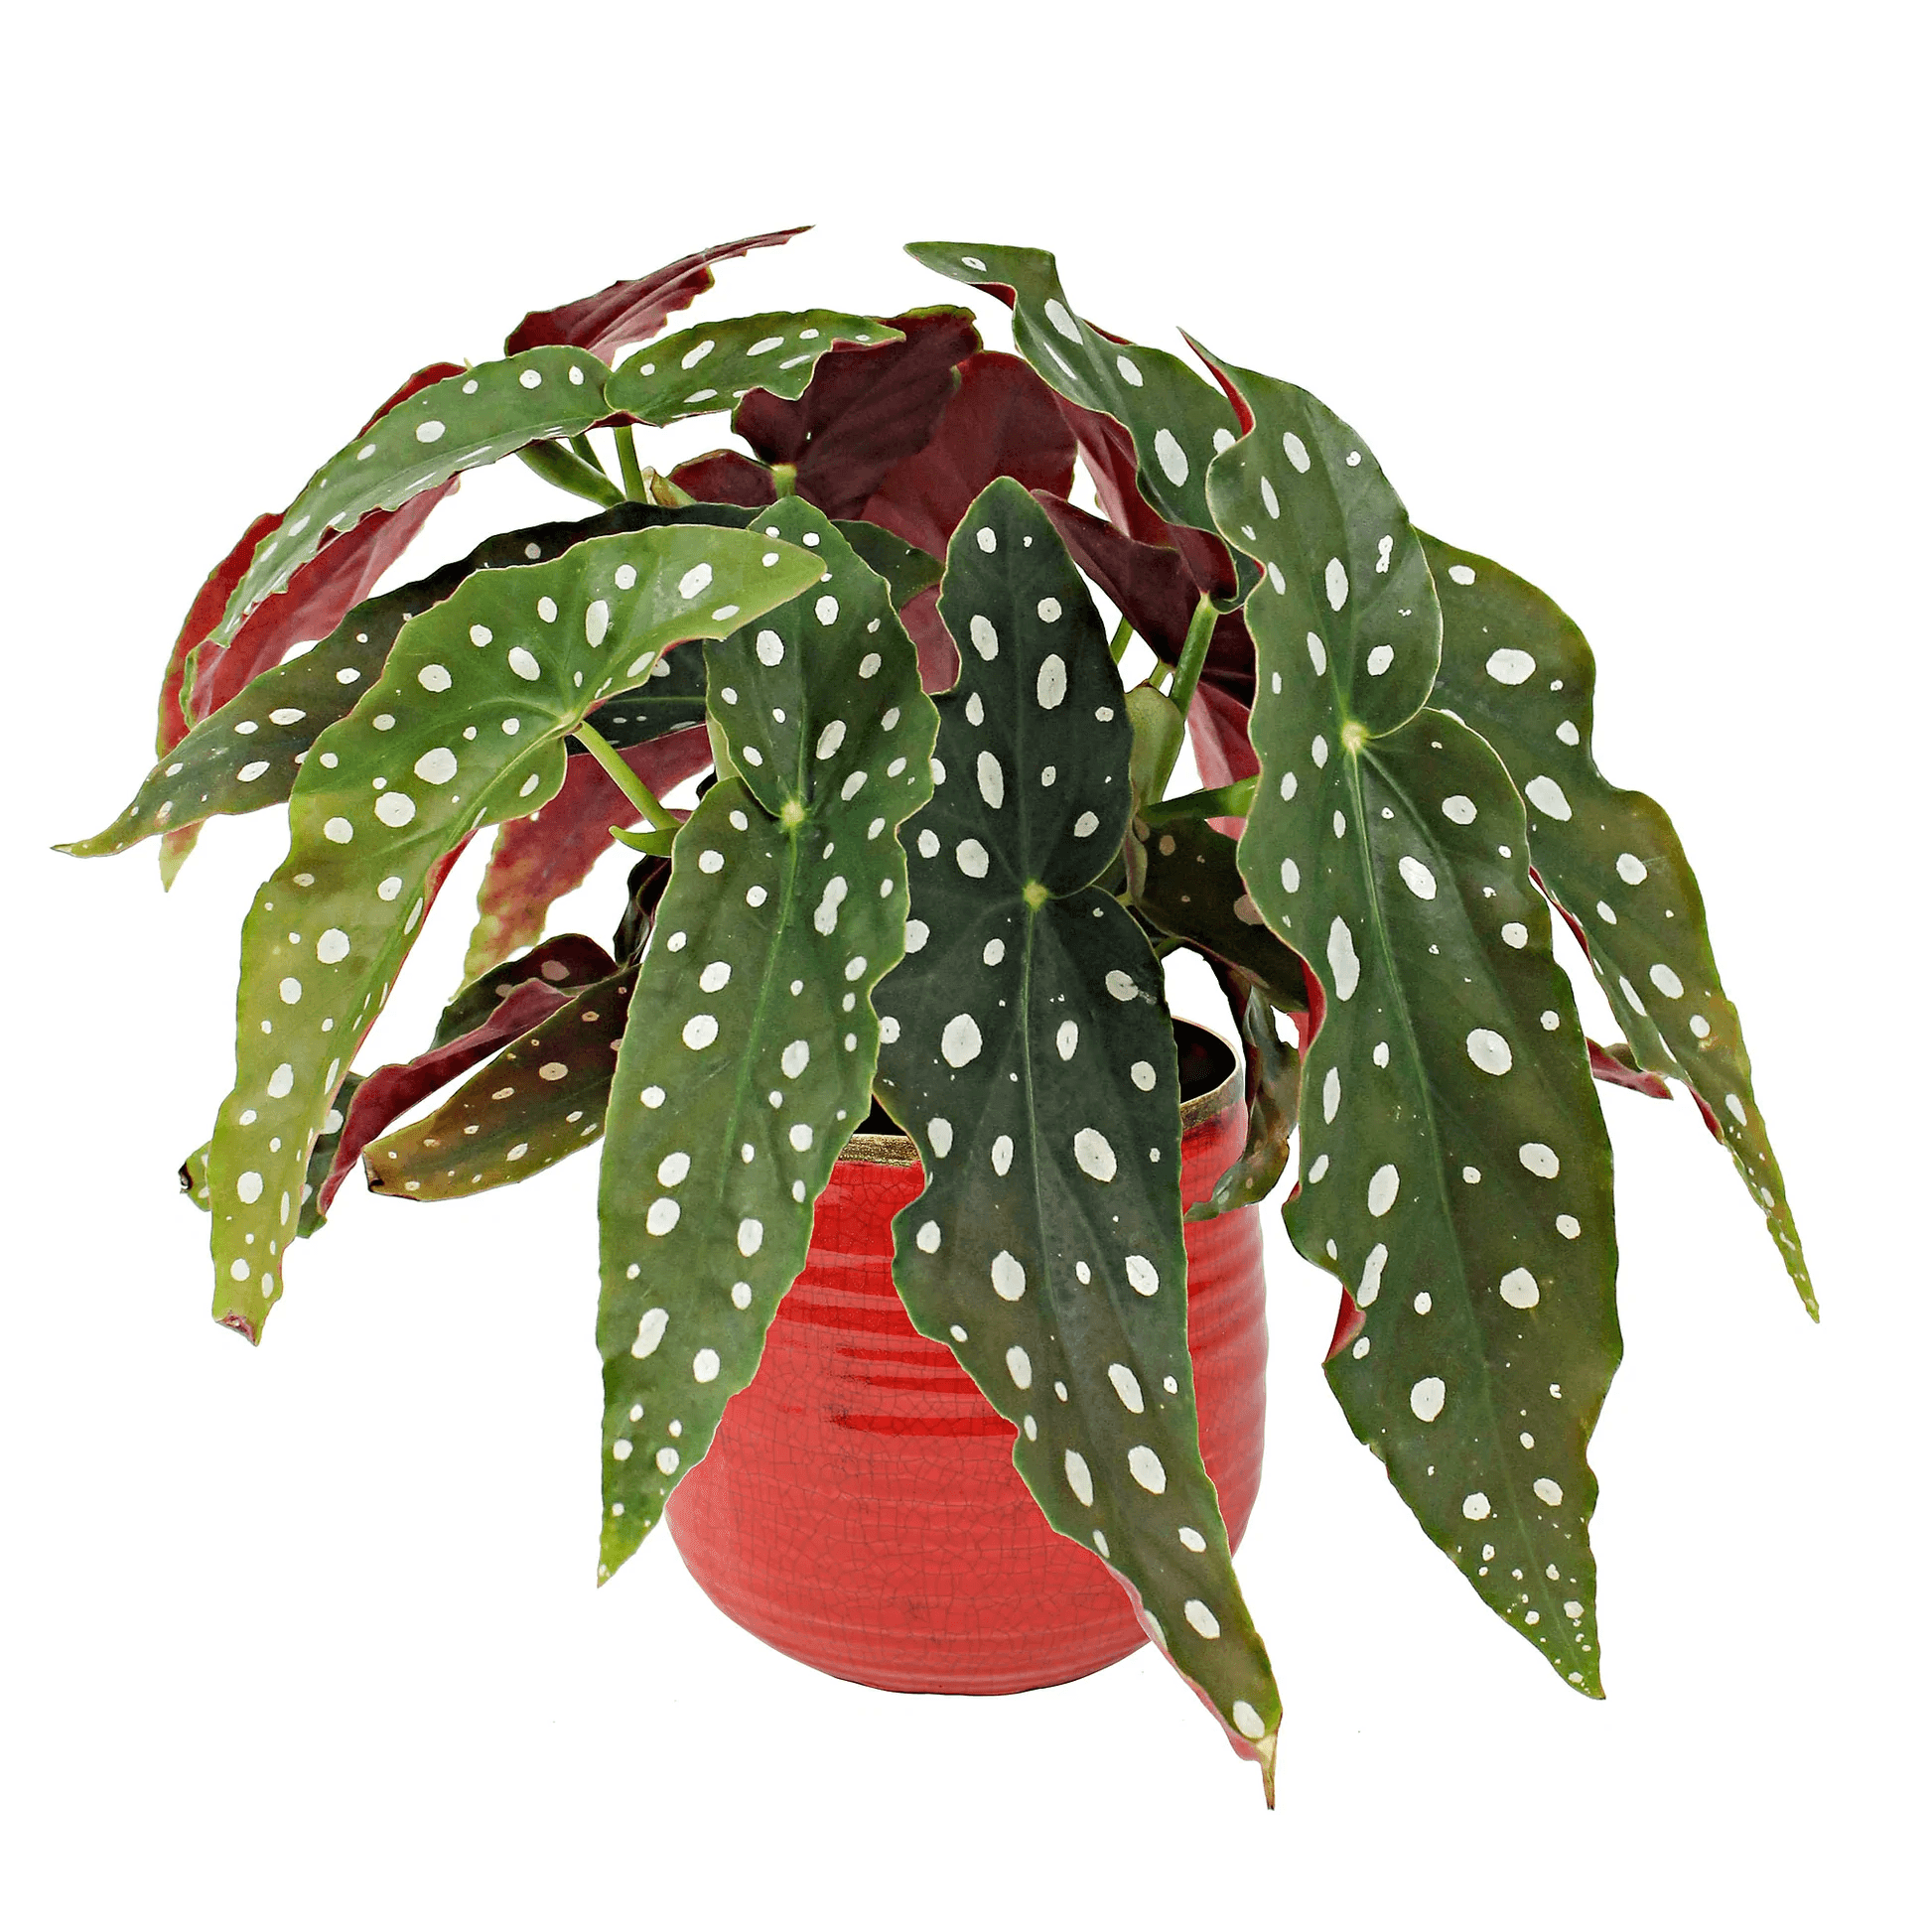 Polka Dot Begonia maculata - Indonesia Plant